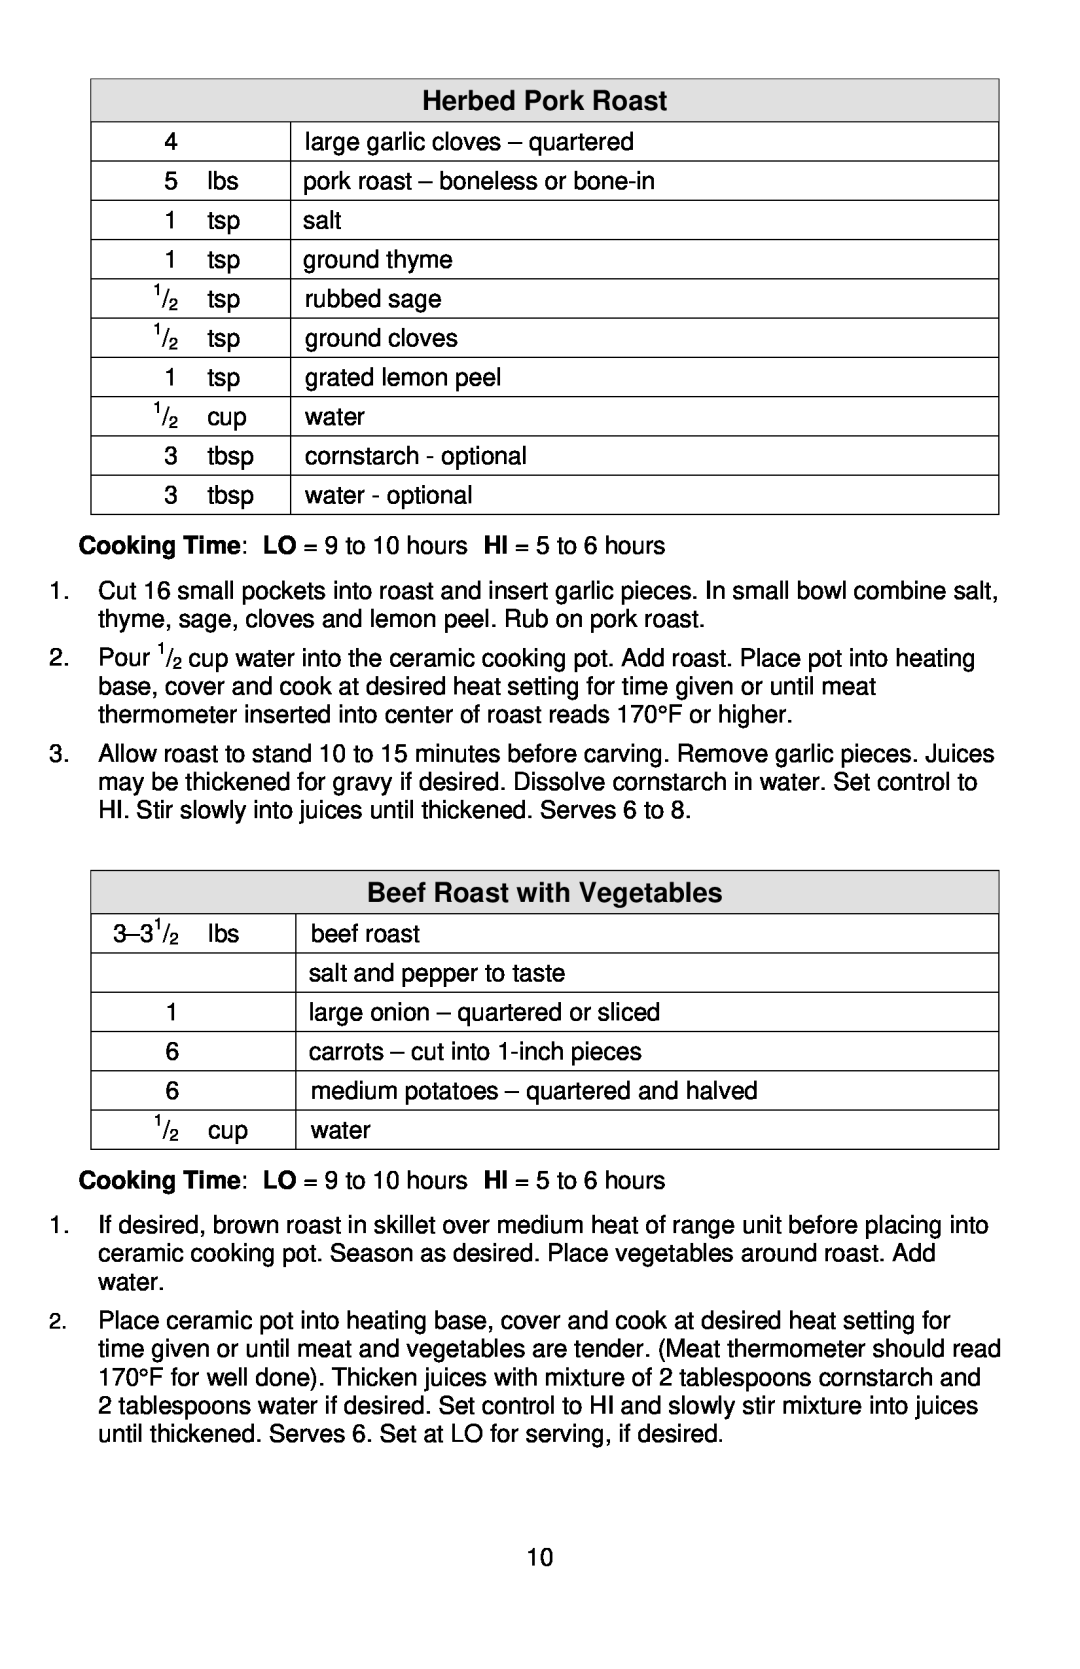 West Bend 5 6 Quart CrockeryTM Cooker instruction manual Herbed Pork Roast, Beef Roast with Vegetables, Cooking Time 